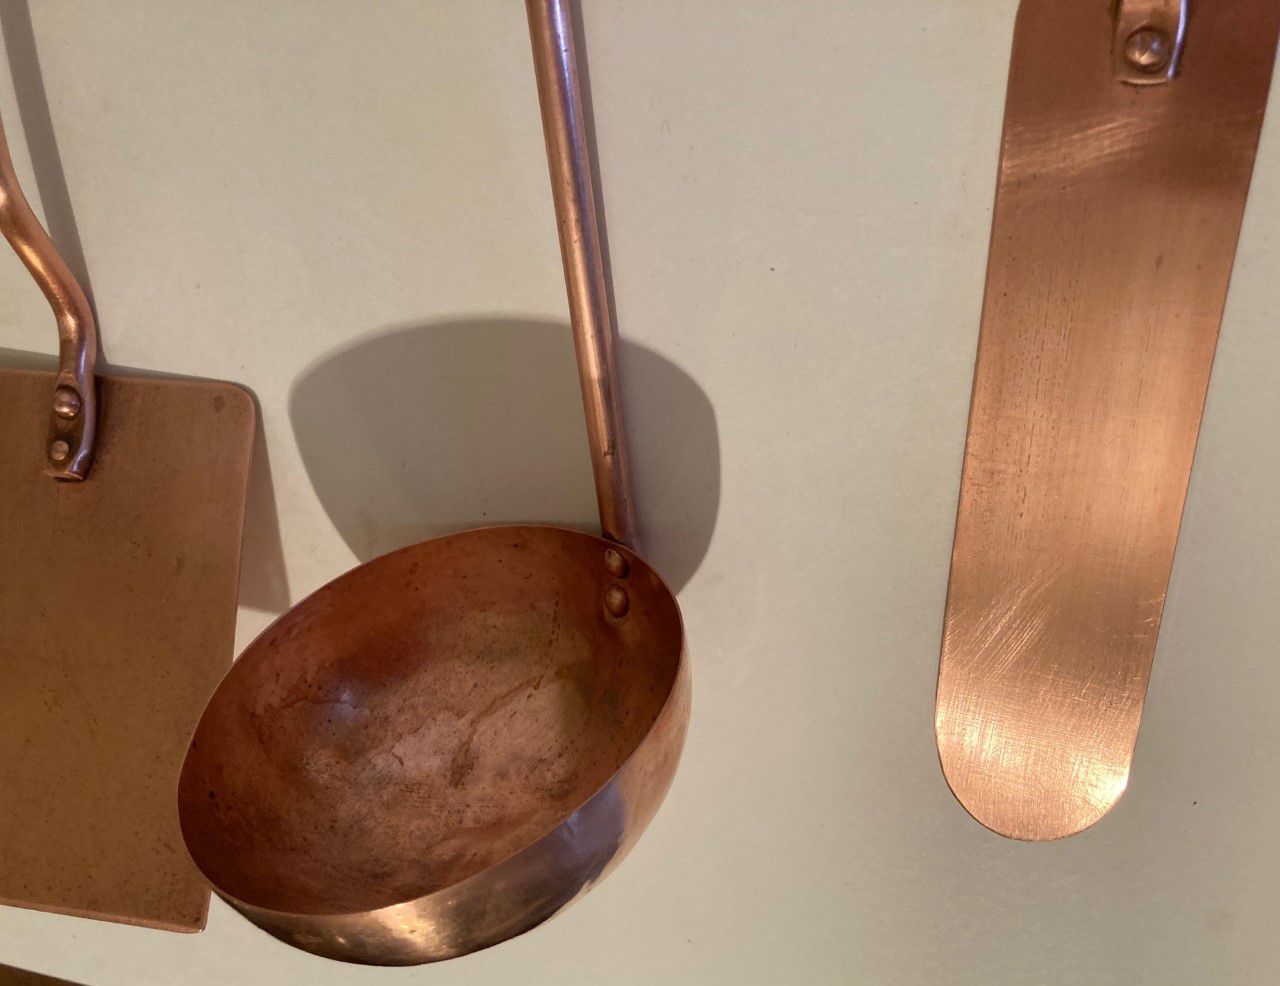 Vintage 5 Piece Set of Hanging Copper and Wood Serving Utensils, Spatula, Laddle, Strainer, Spreader, Brass Hanging Bar Holder, 14" Wide Brass Bar